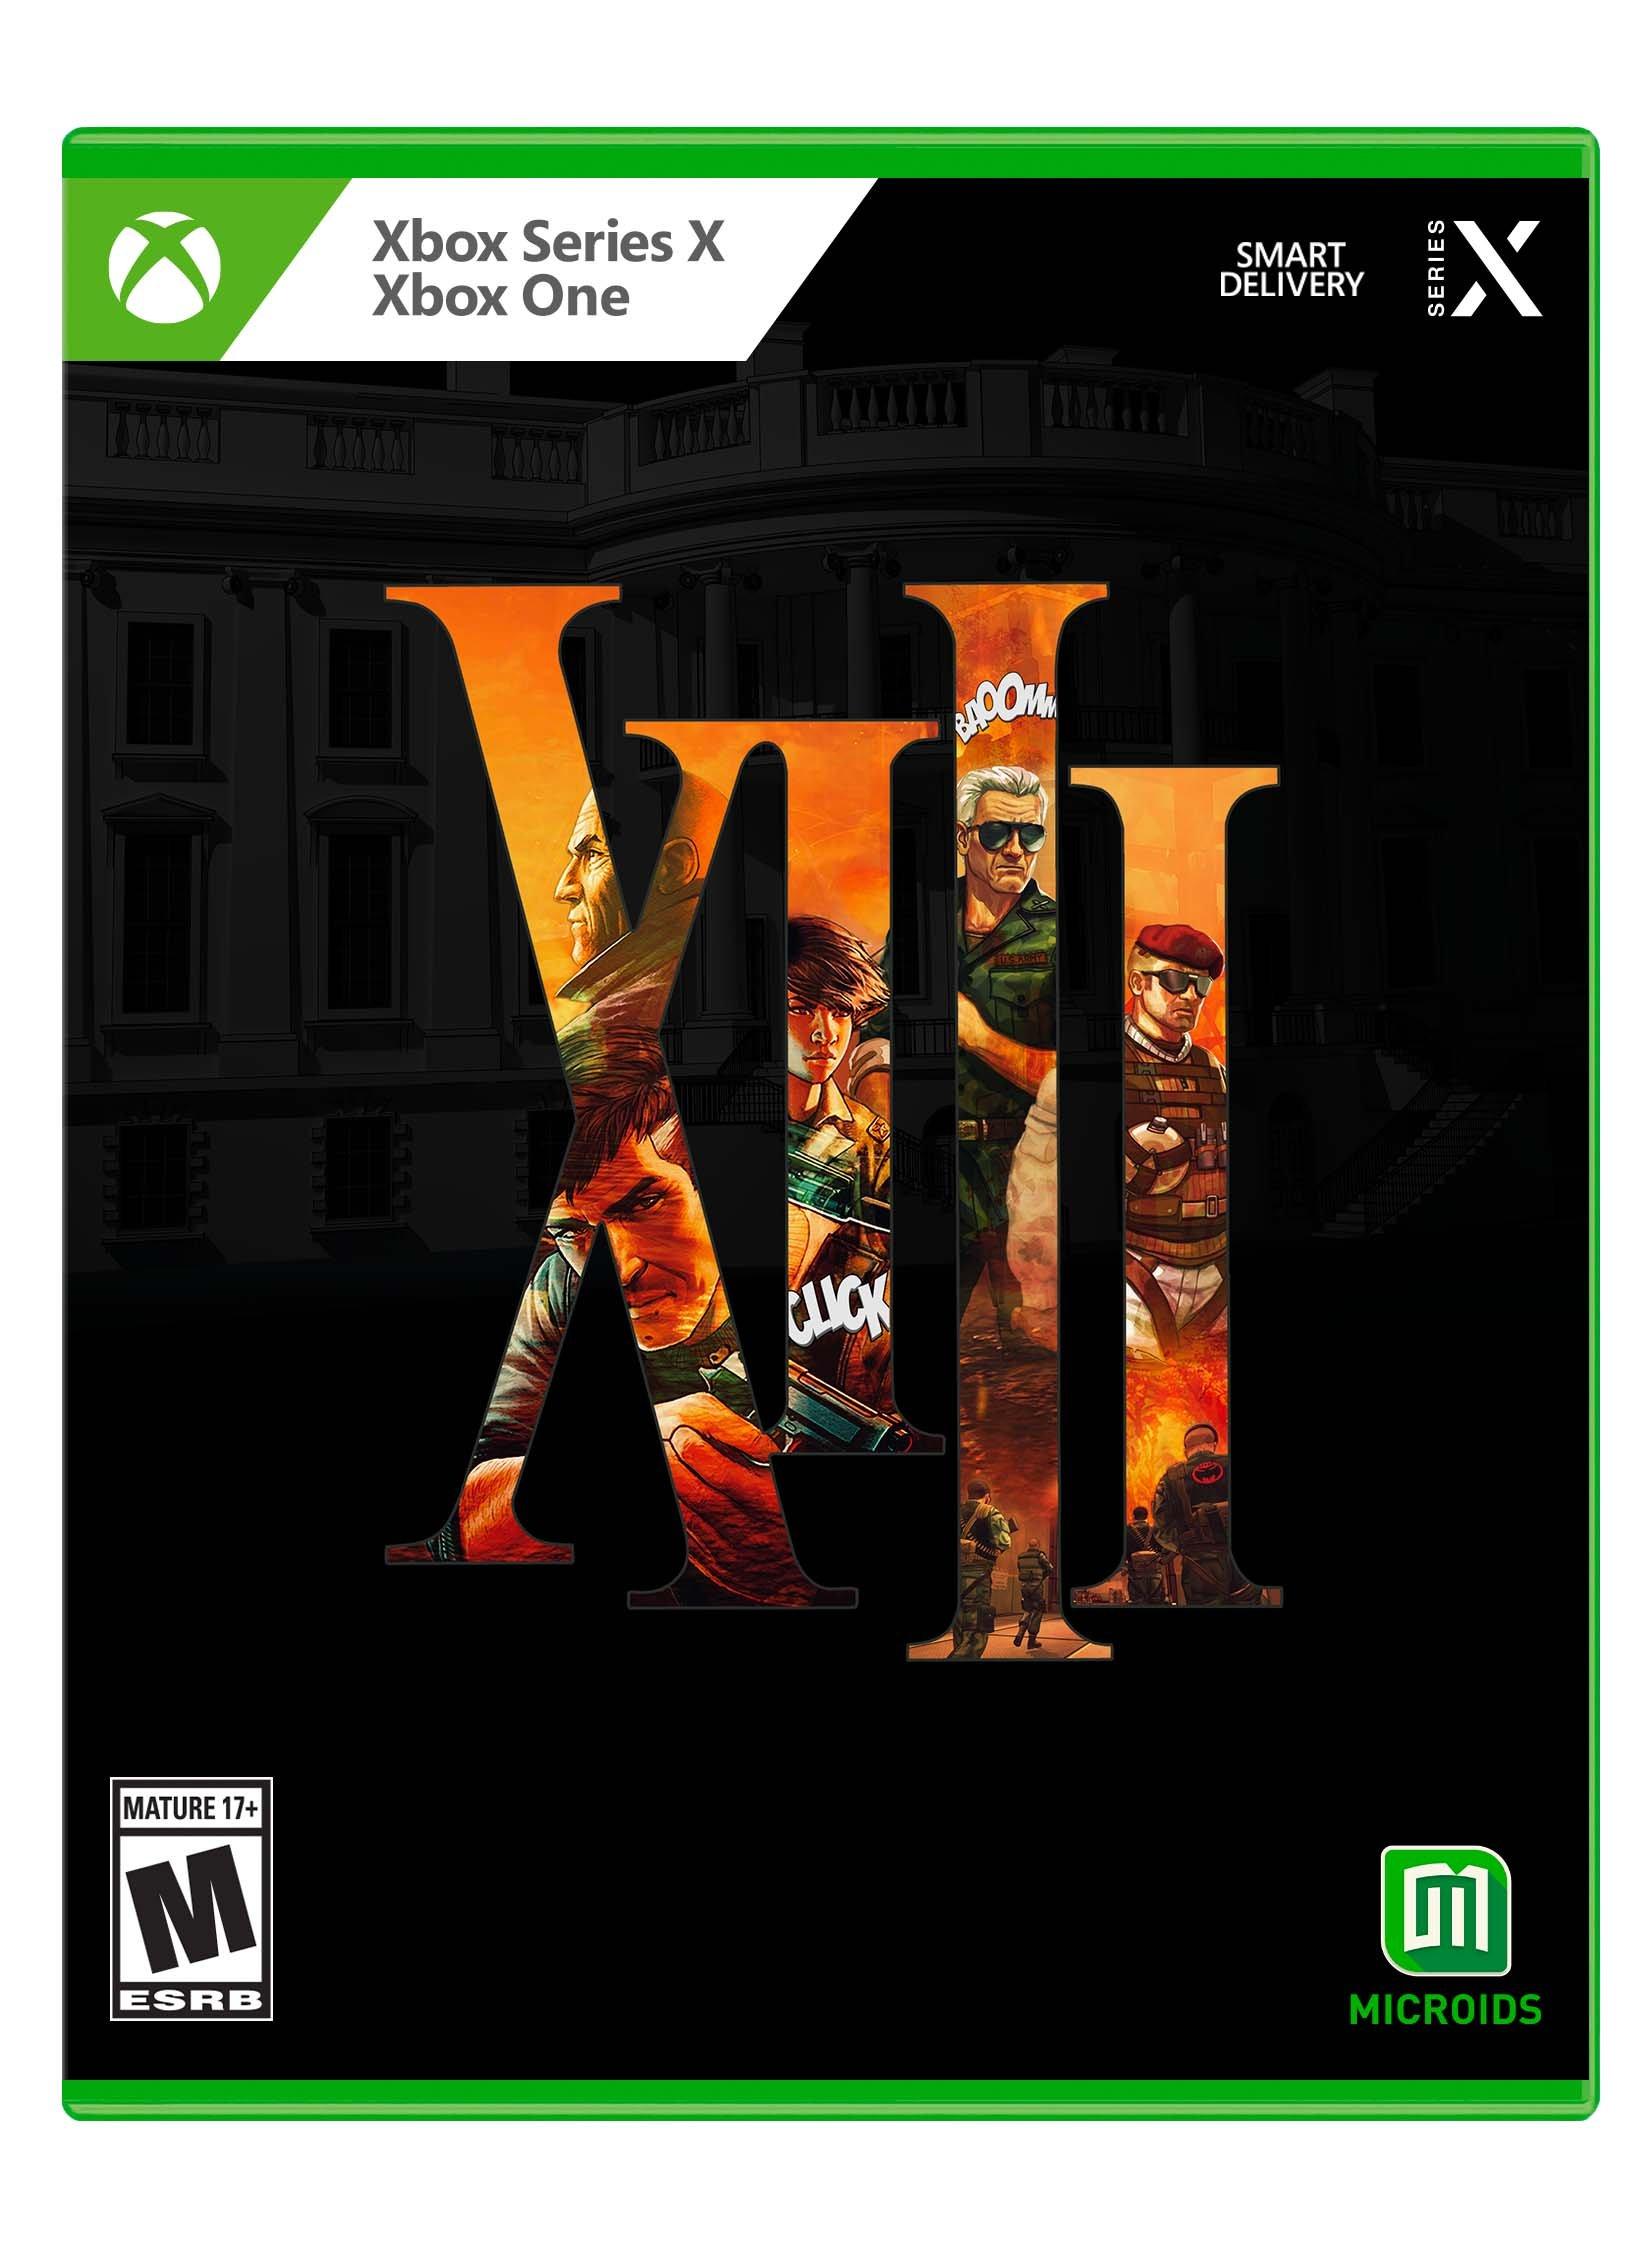 XIII - Xbox One